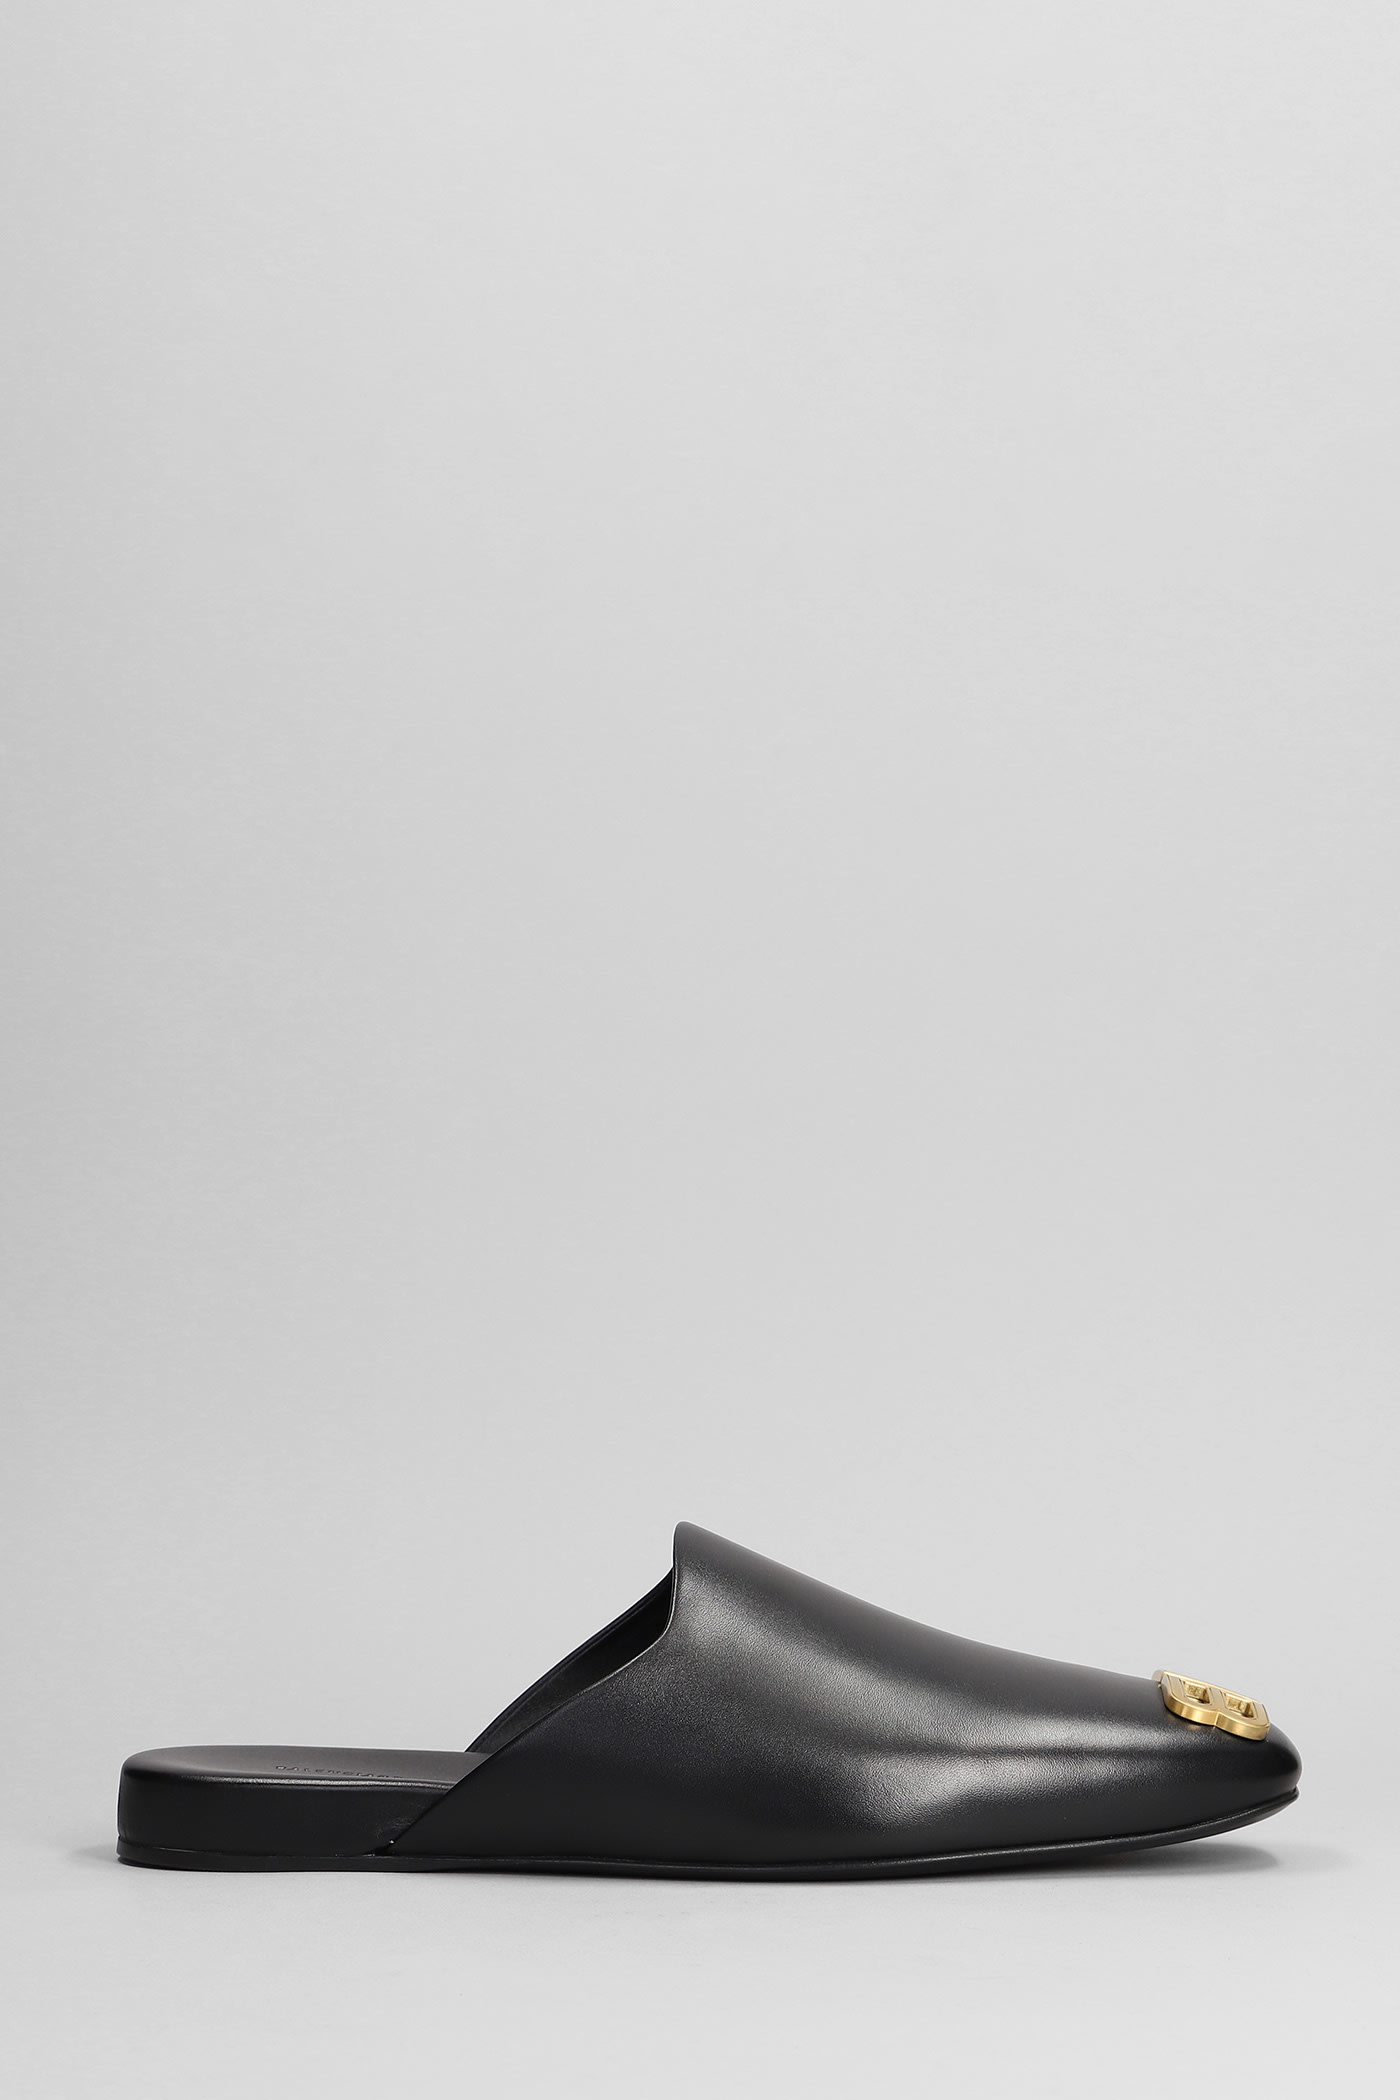 Balenciaga Cosy New Bb Slipper-mule In Black Leather